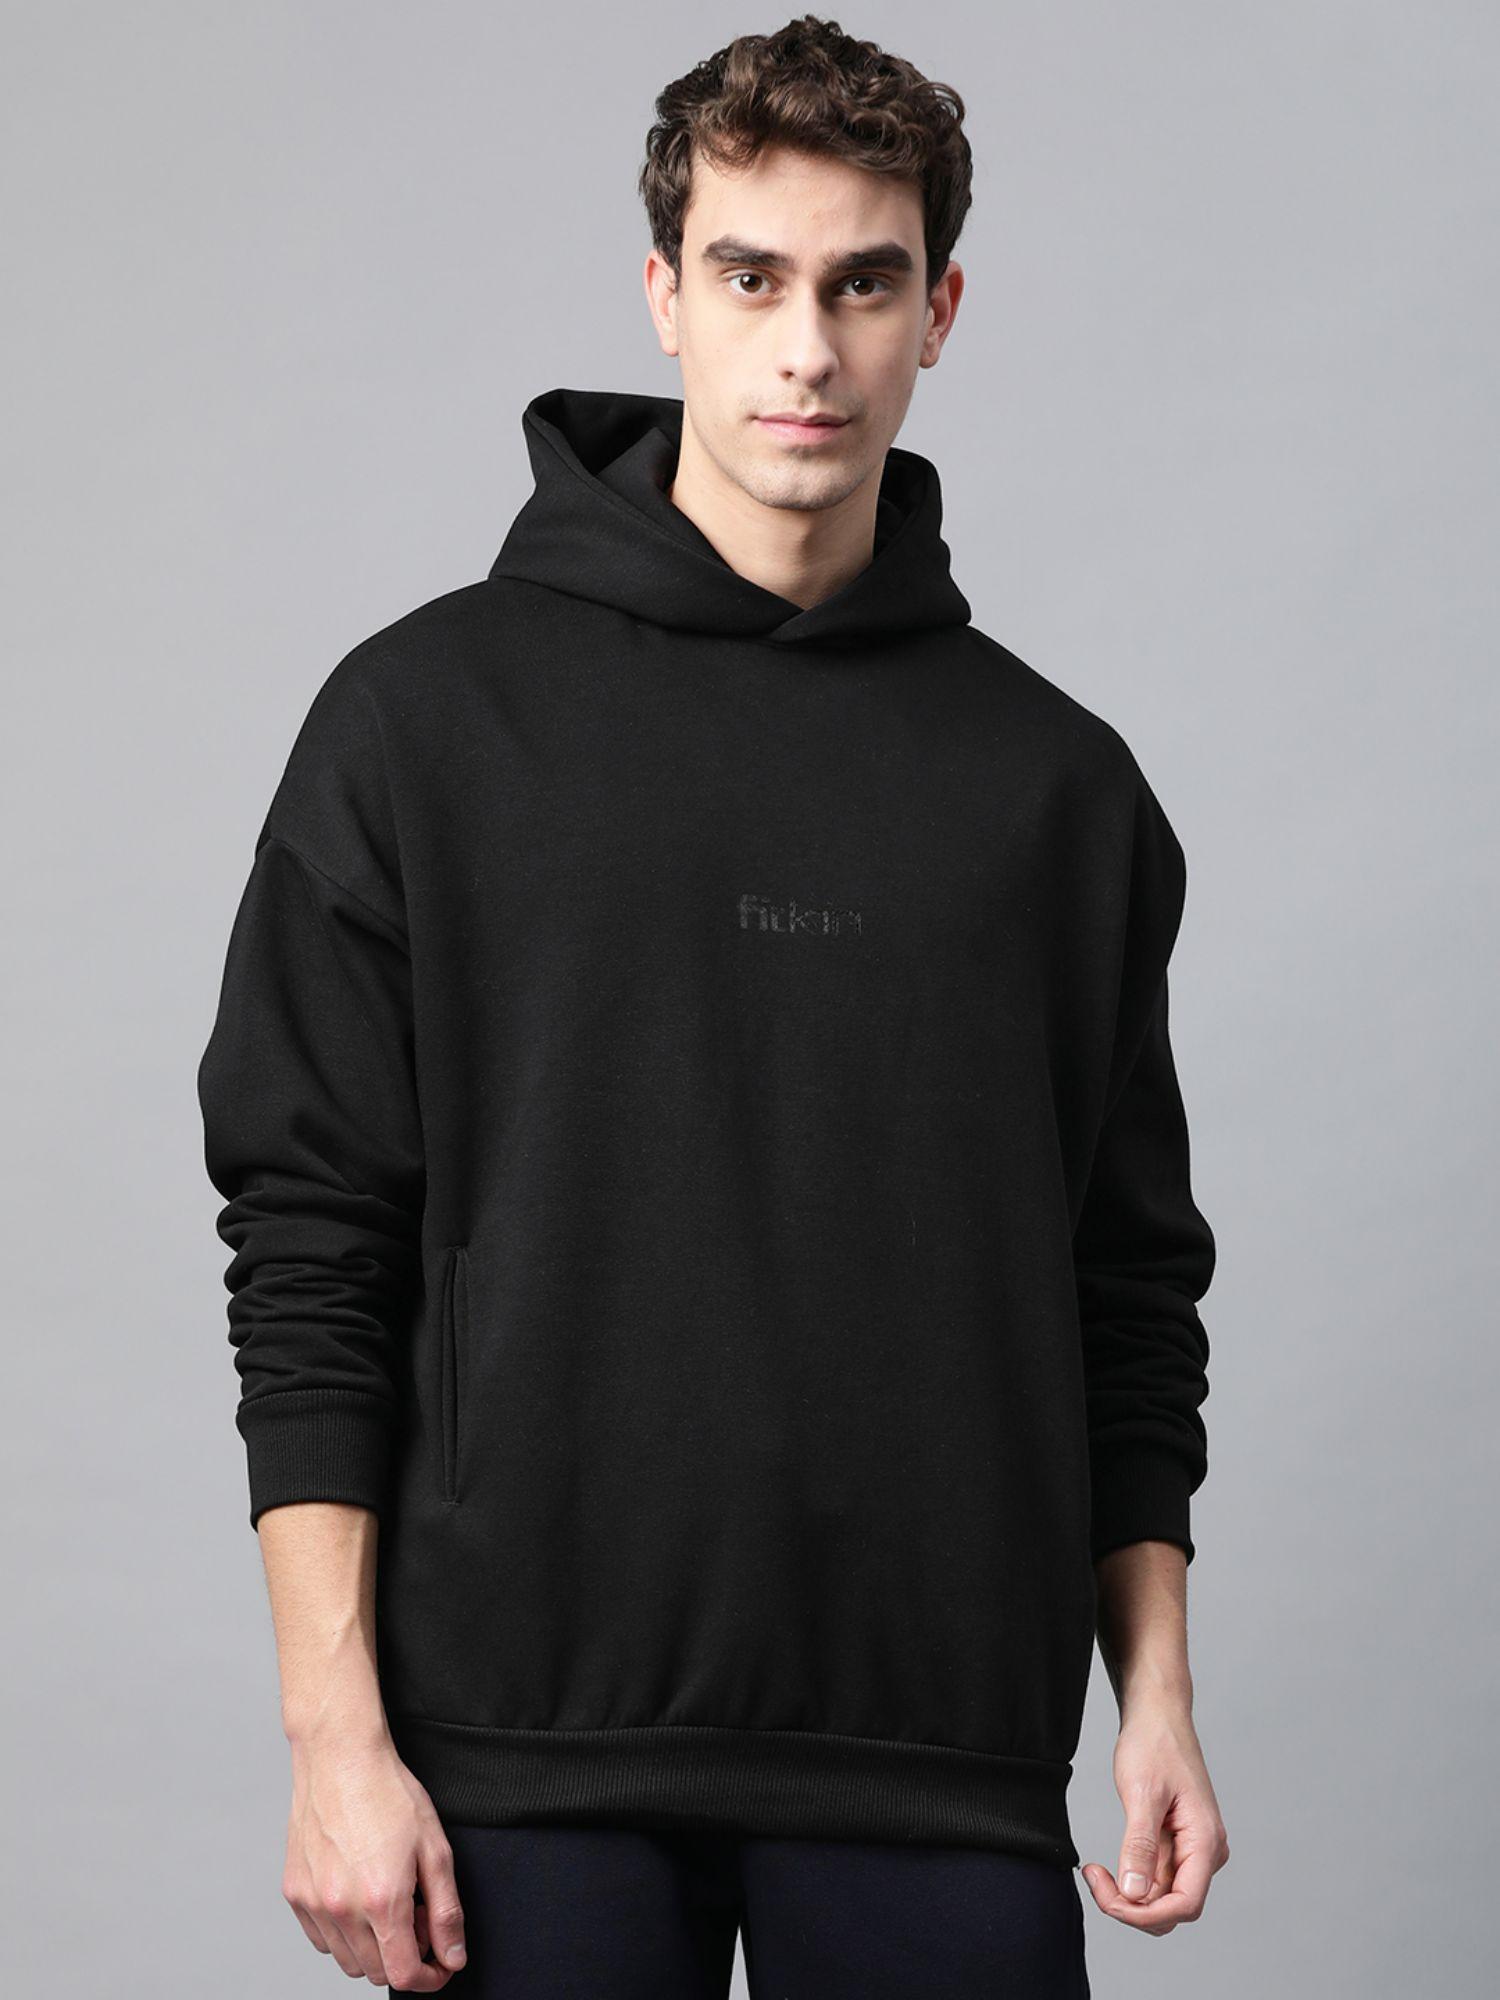 mens black fleece winter hoodie sweatshirt